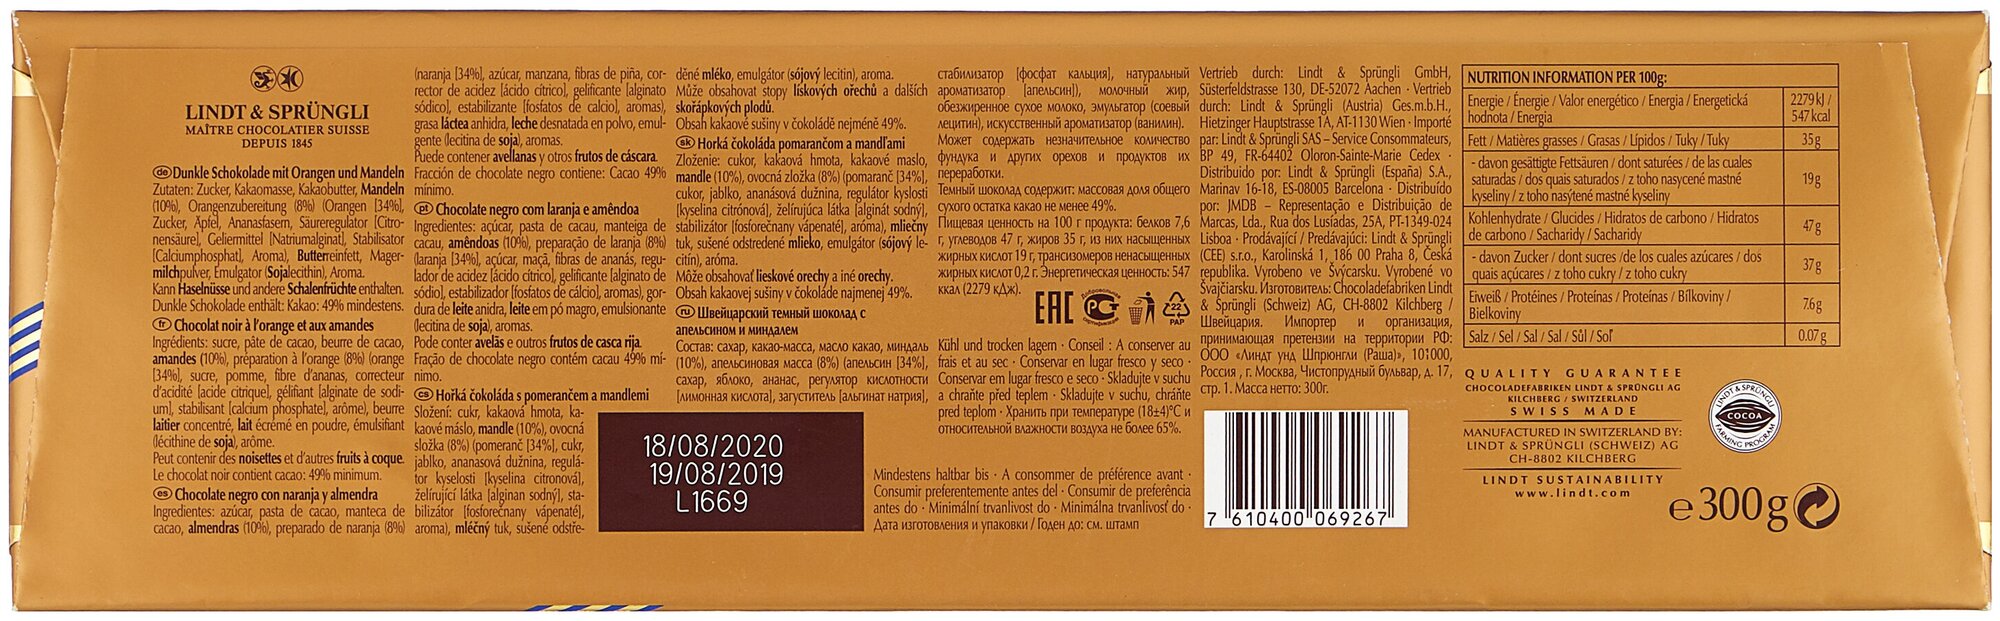 Шоколад Lindt Swiss Premium Темный с апельсином и миндалем 49% 300г Lindt and Sprungli - фото №2